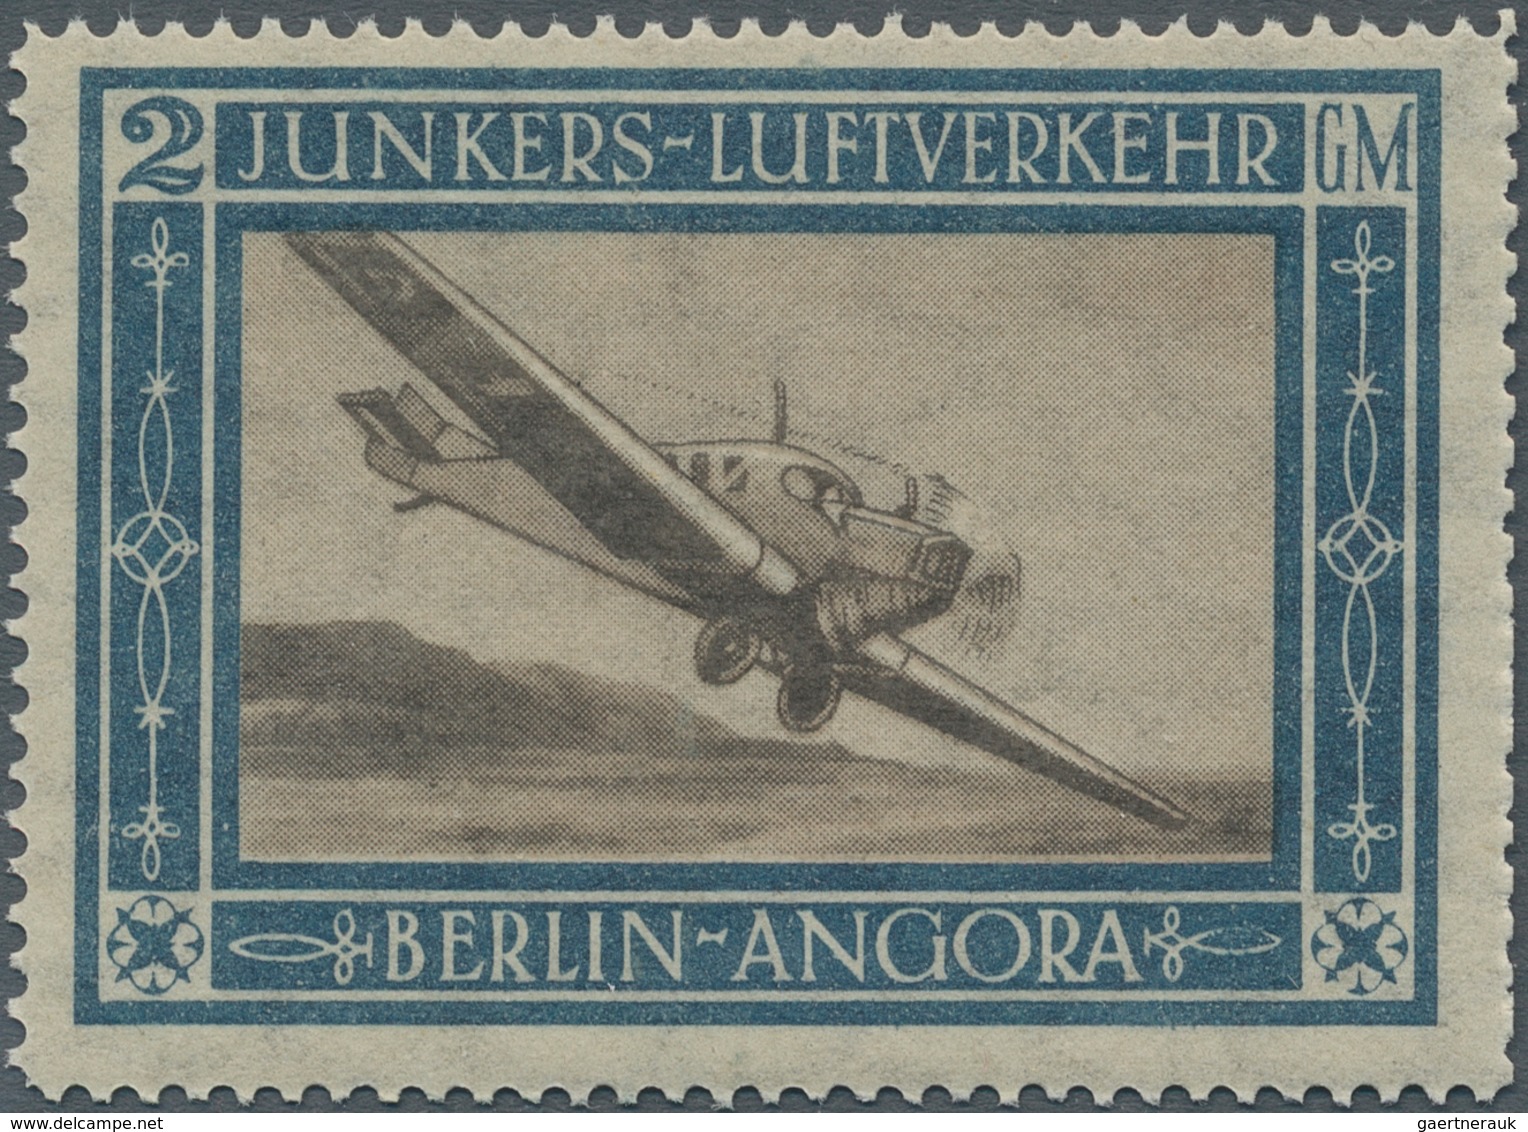 Deutsches Reich - Halbamtliche Flugmarken: 1924/1933, Lot Mit Zwei Marken: 2 GM Junkers-Marke 1924 P - Luft- Und Zeppelinpost